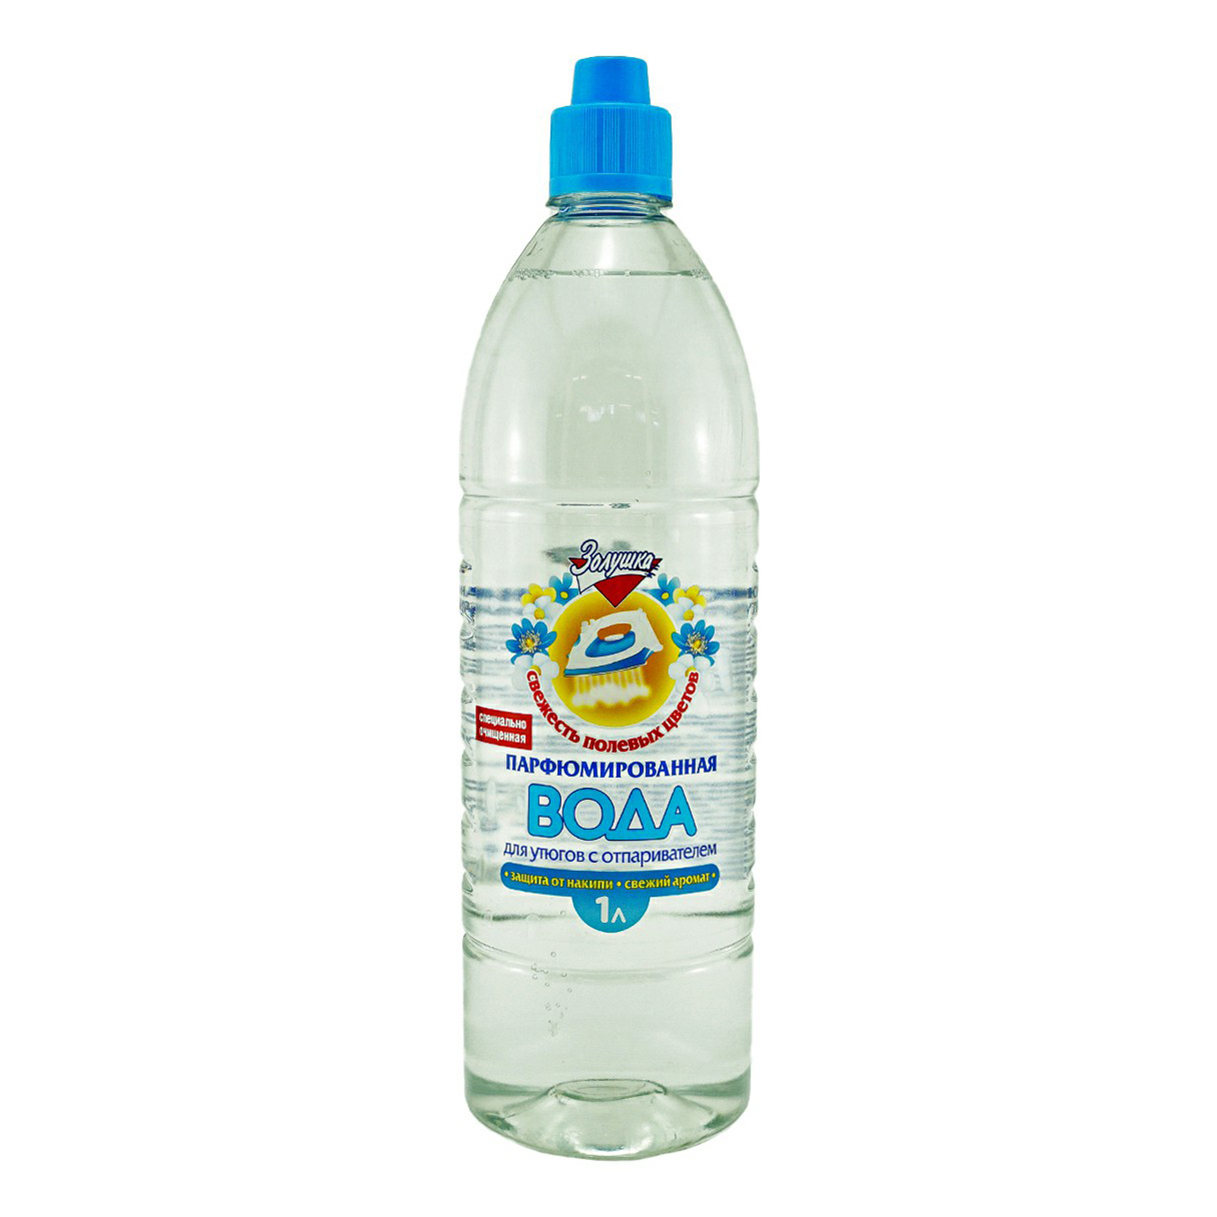 Вода Золушка для утюгов парфюмированная 1 л вода для утюгов с отпаривателем bioretto eco 1 л